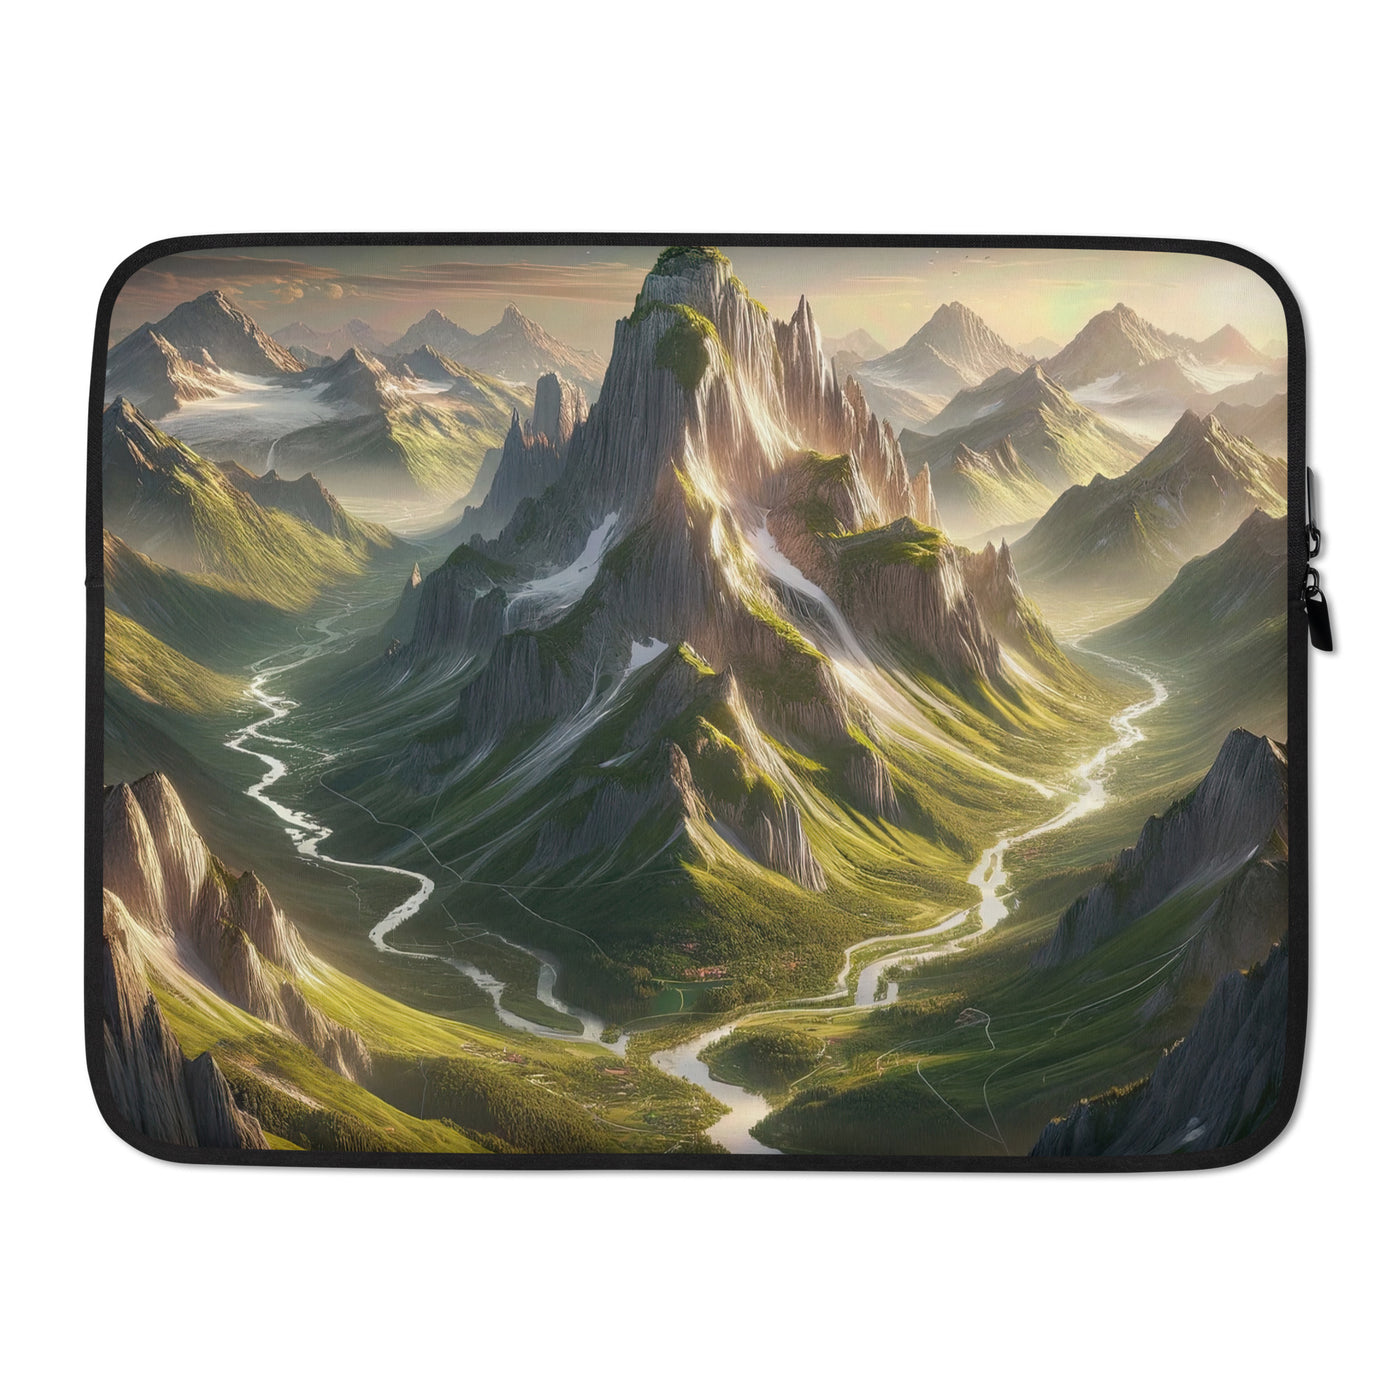 Fotorealistisches Bild der Alpen mit österreichischer Flagge, scharfen Gipfeln und grünen Tälern - Laptophülle berge xxx yyy zzz 15″